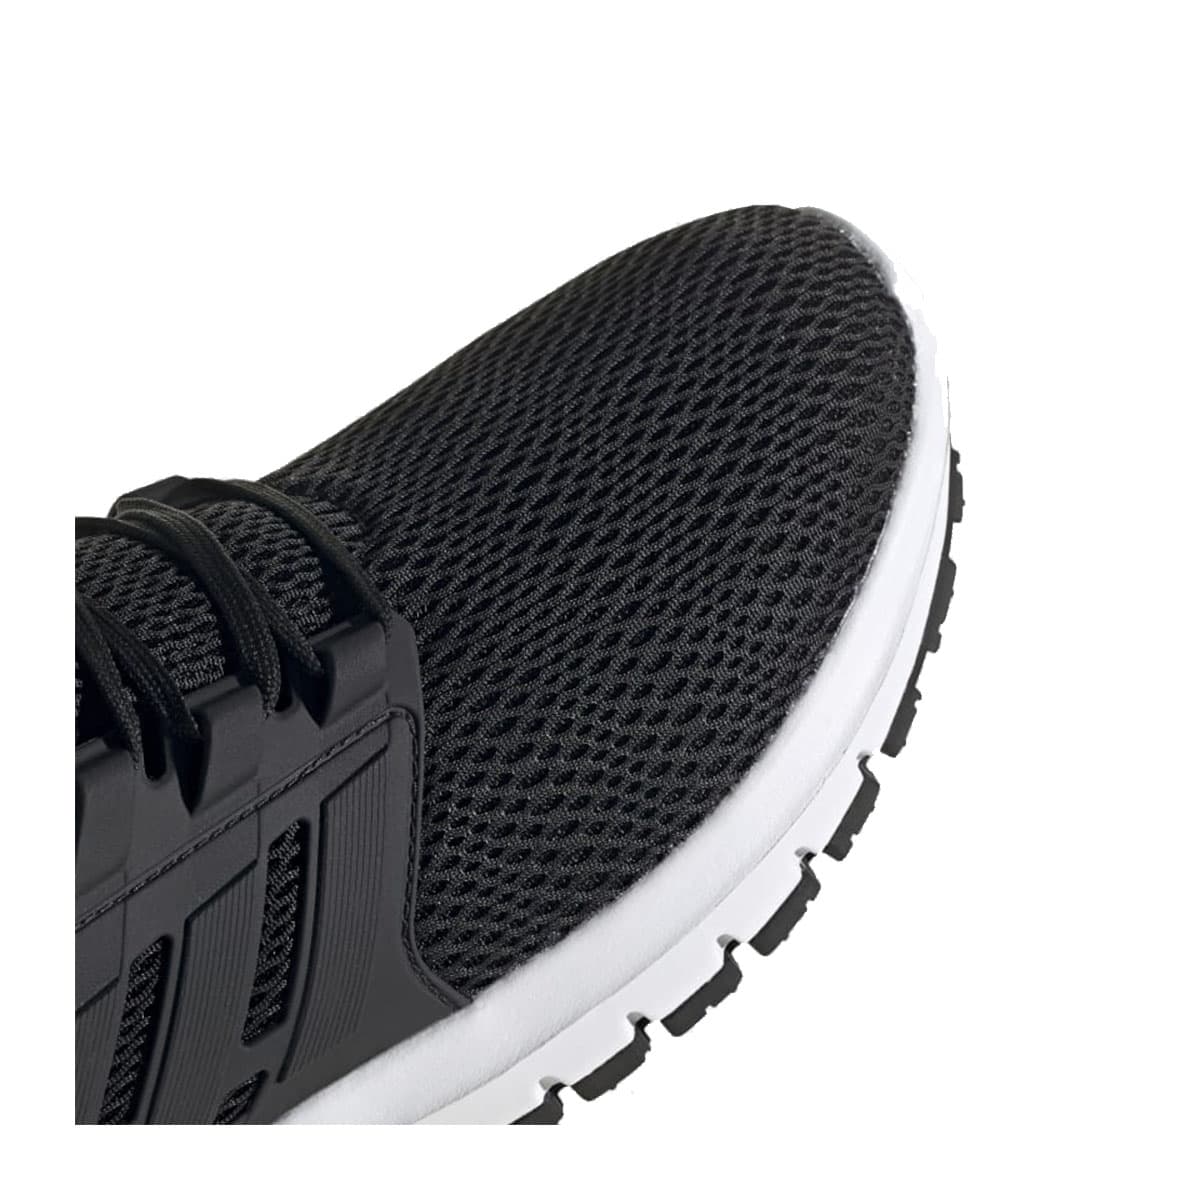 adidas Ultimashow Siyah Koşu Ayakkabısı (FX3636)